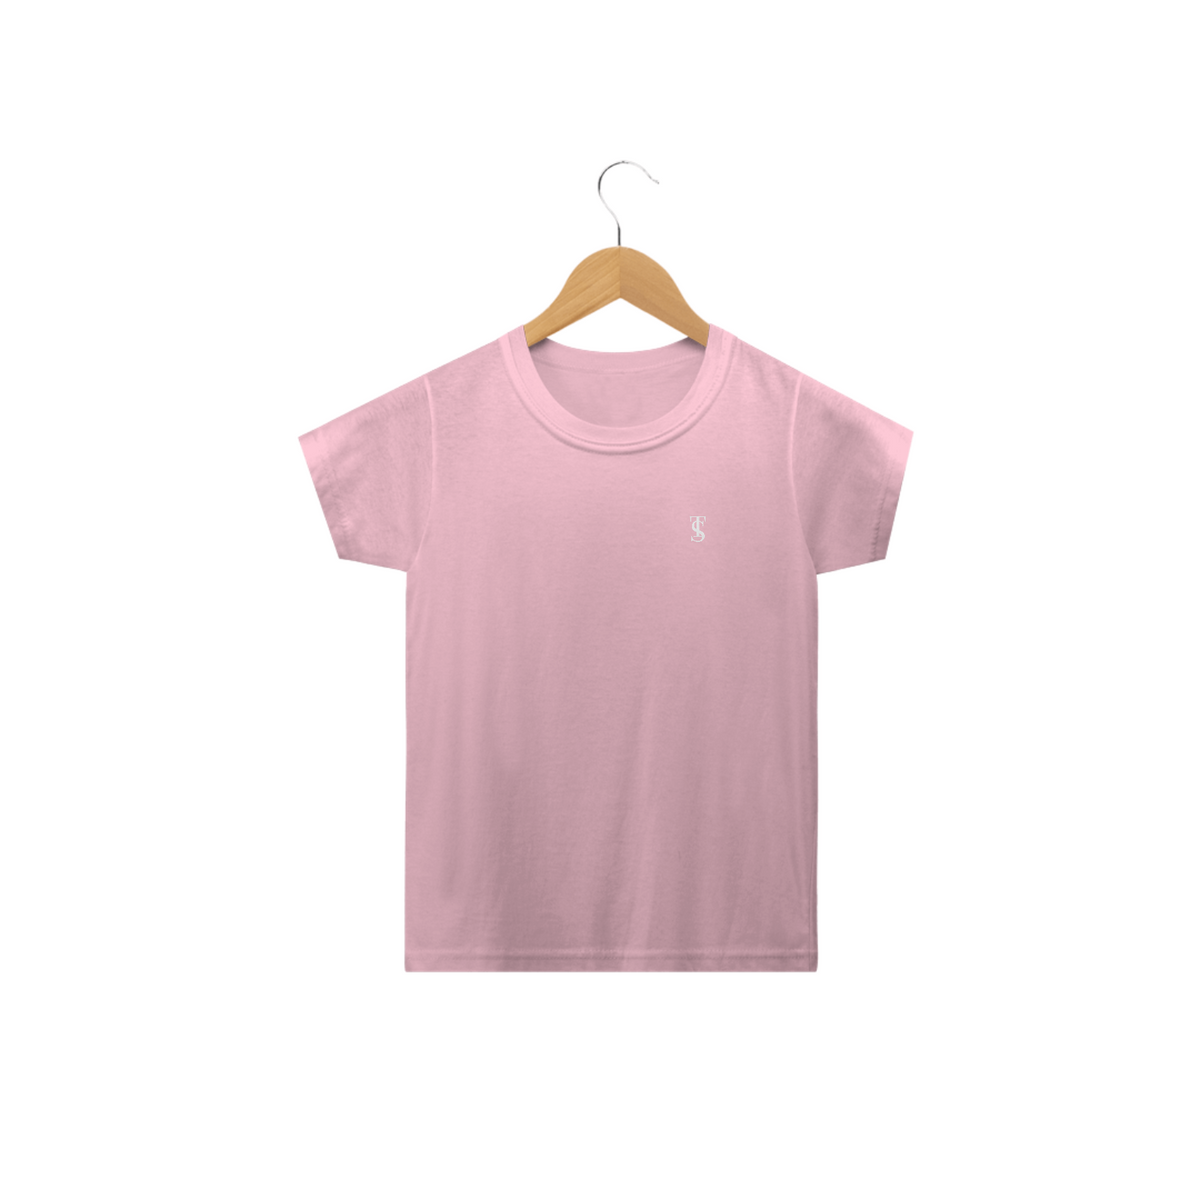 Nome do produto: Camiseta Básica Infantil Rosa bebe